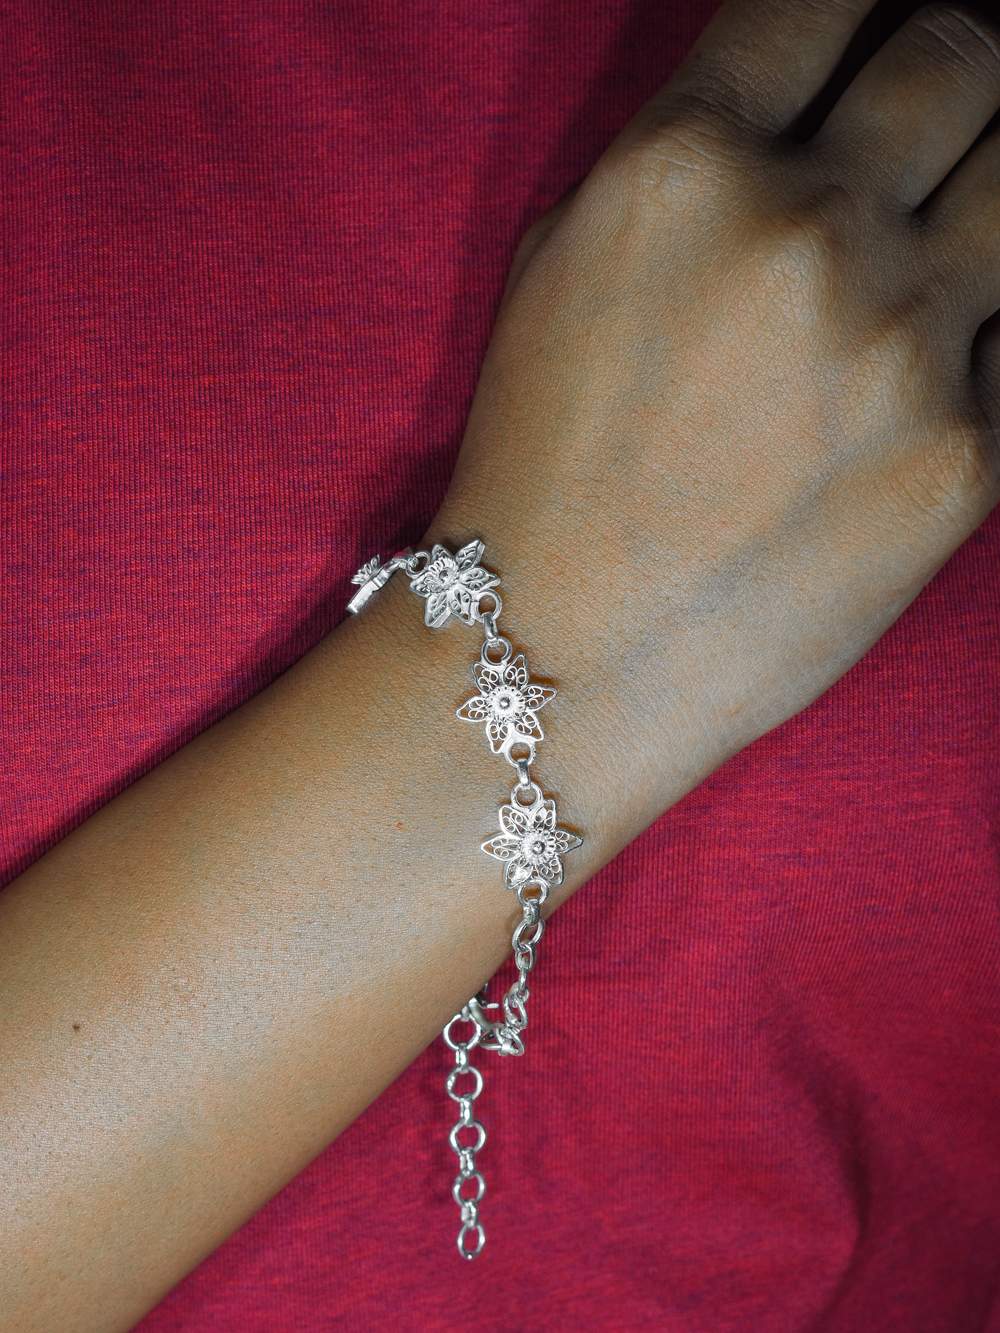 Silver Heart Bracelet Silver Heart Jewelry for Women Sterling Silver  Bracelet Silver Bracelet for Women - Etsy | Silver heart jewelry, Silver  heart bracelet, Silver bracelets for women